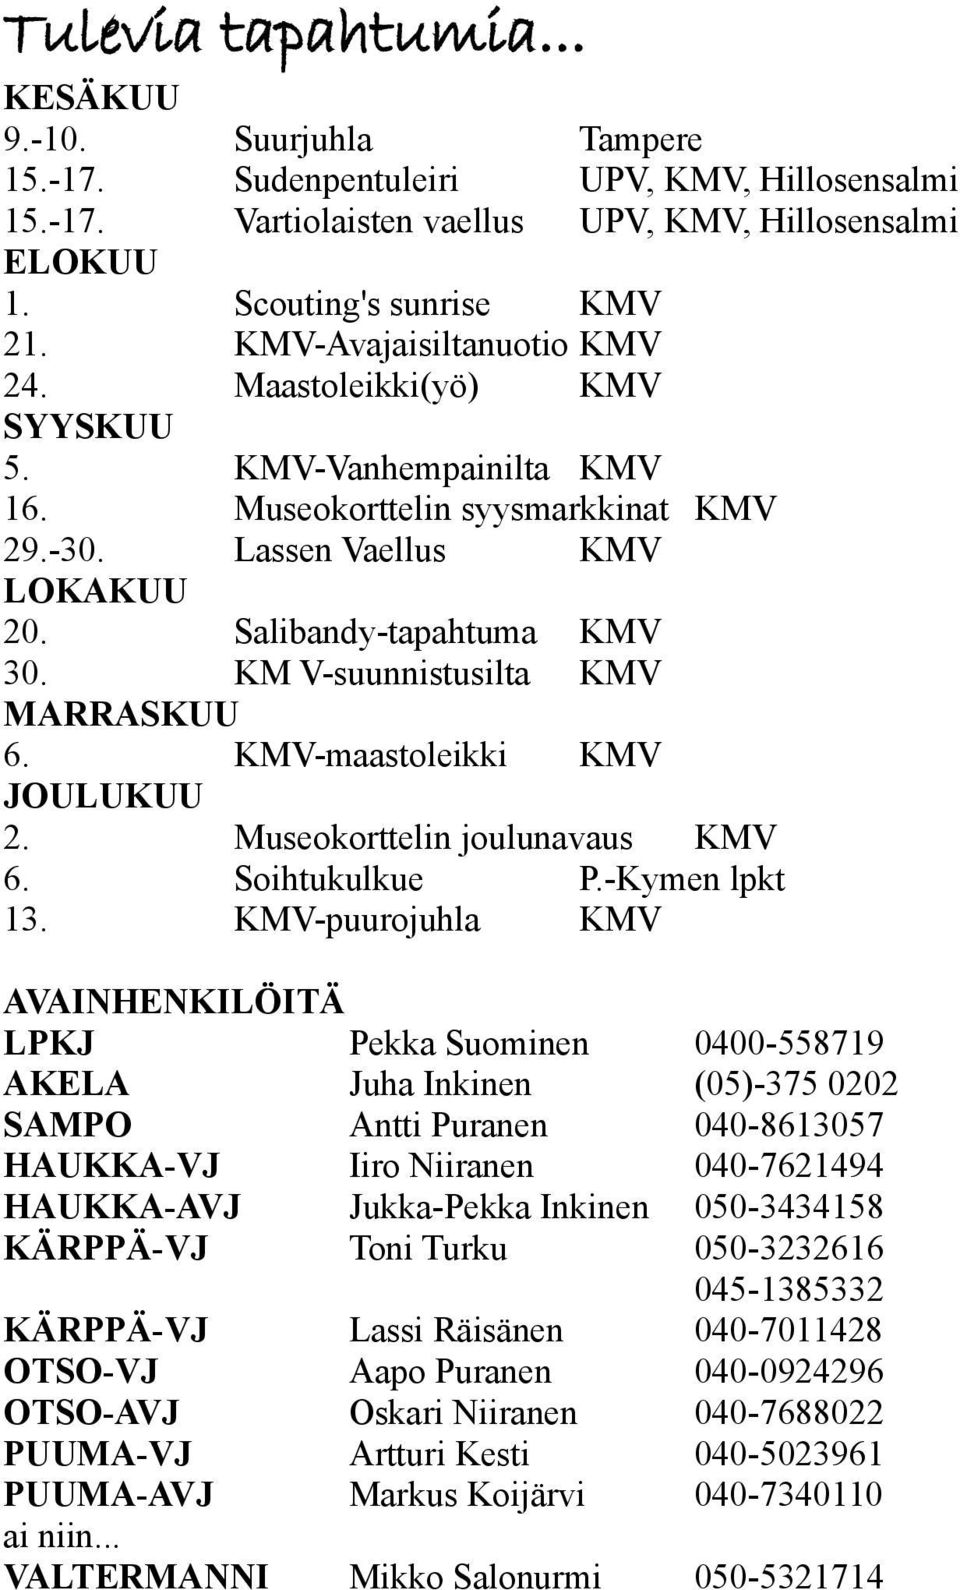 KM V-suunnistusilta KMV MARRASKUU 6. KMV-maastoleikki KMV JOULUKUU 2. Museokorttelin joulunavaus KMV 6. Soihtukulkue P.-Kymen lpkt 13.